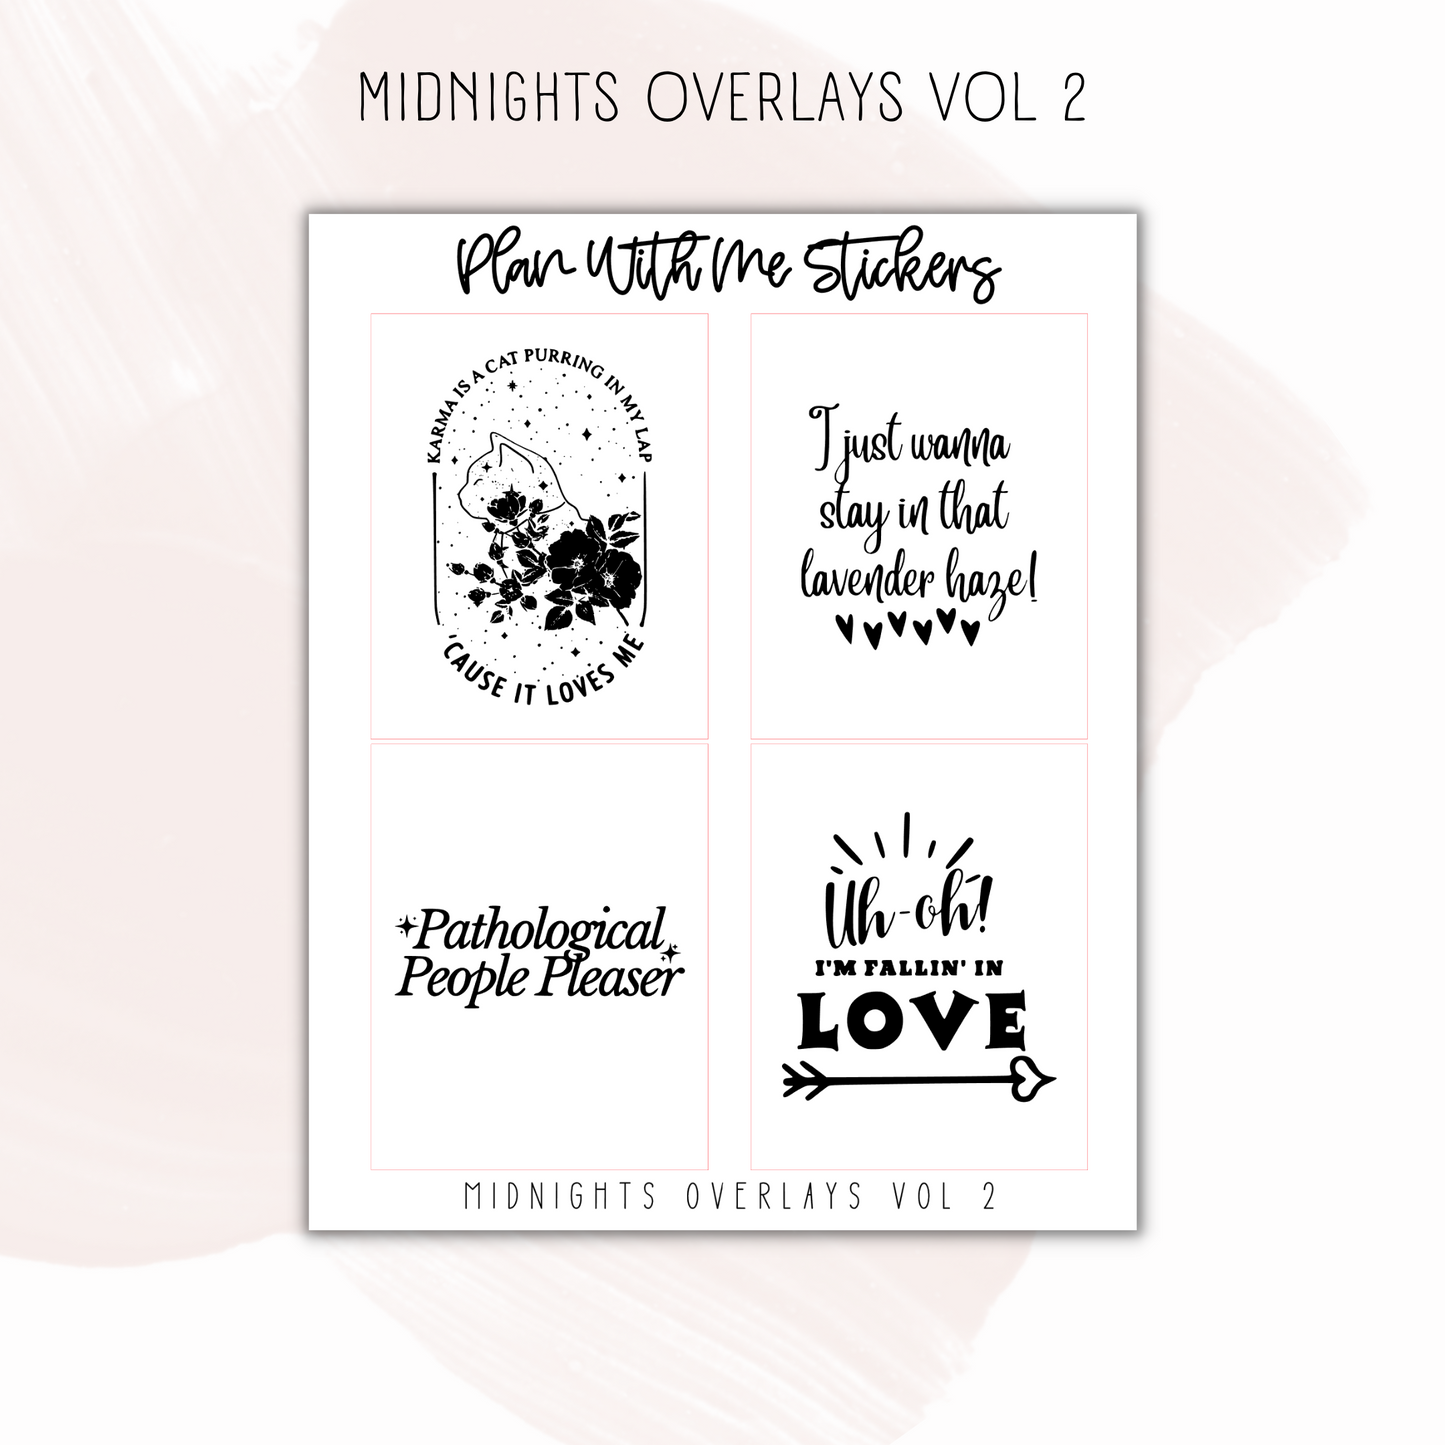 Midnights Overlays Vol 2